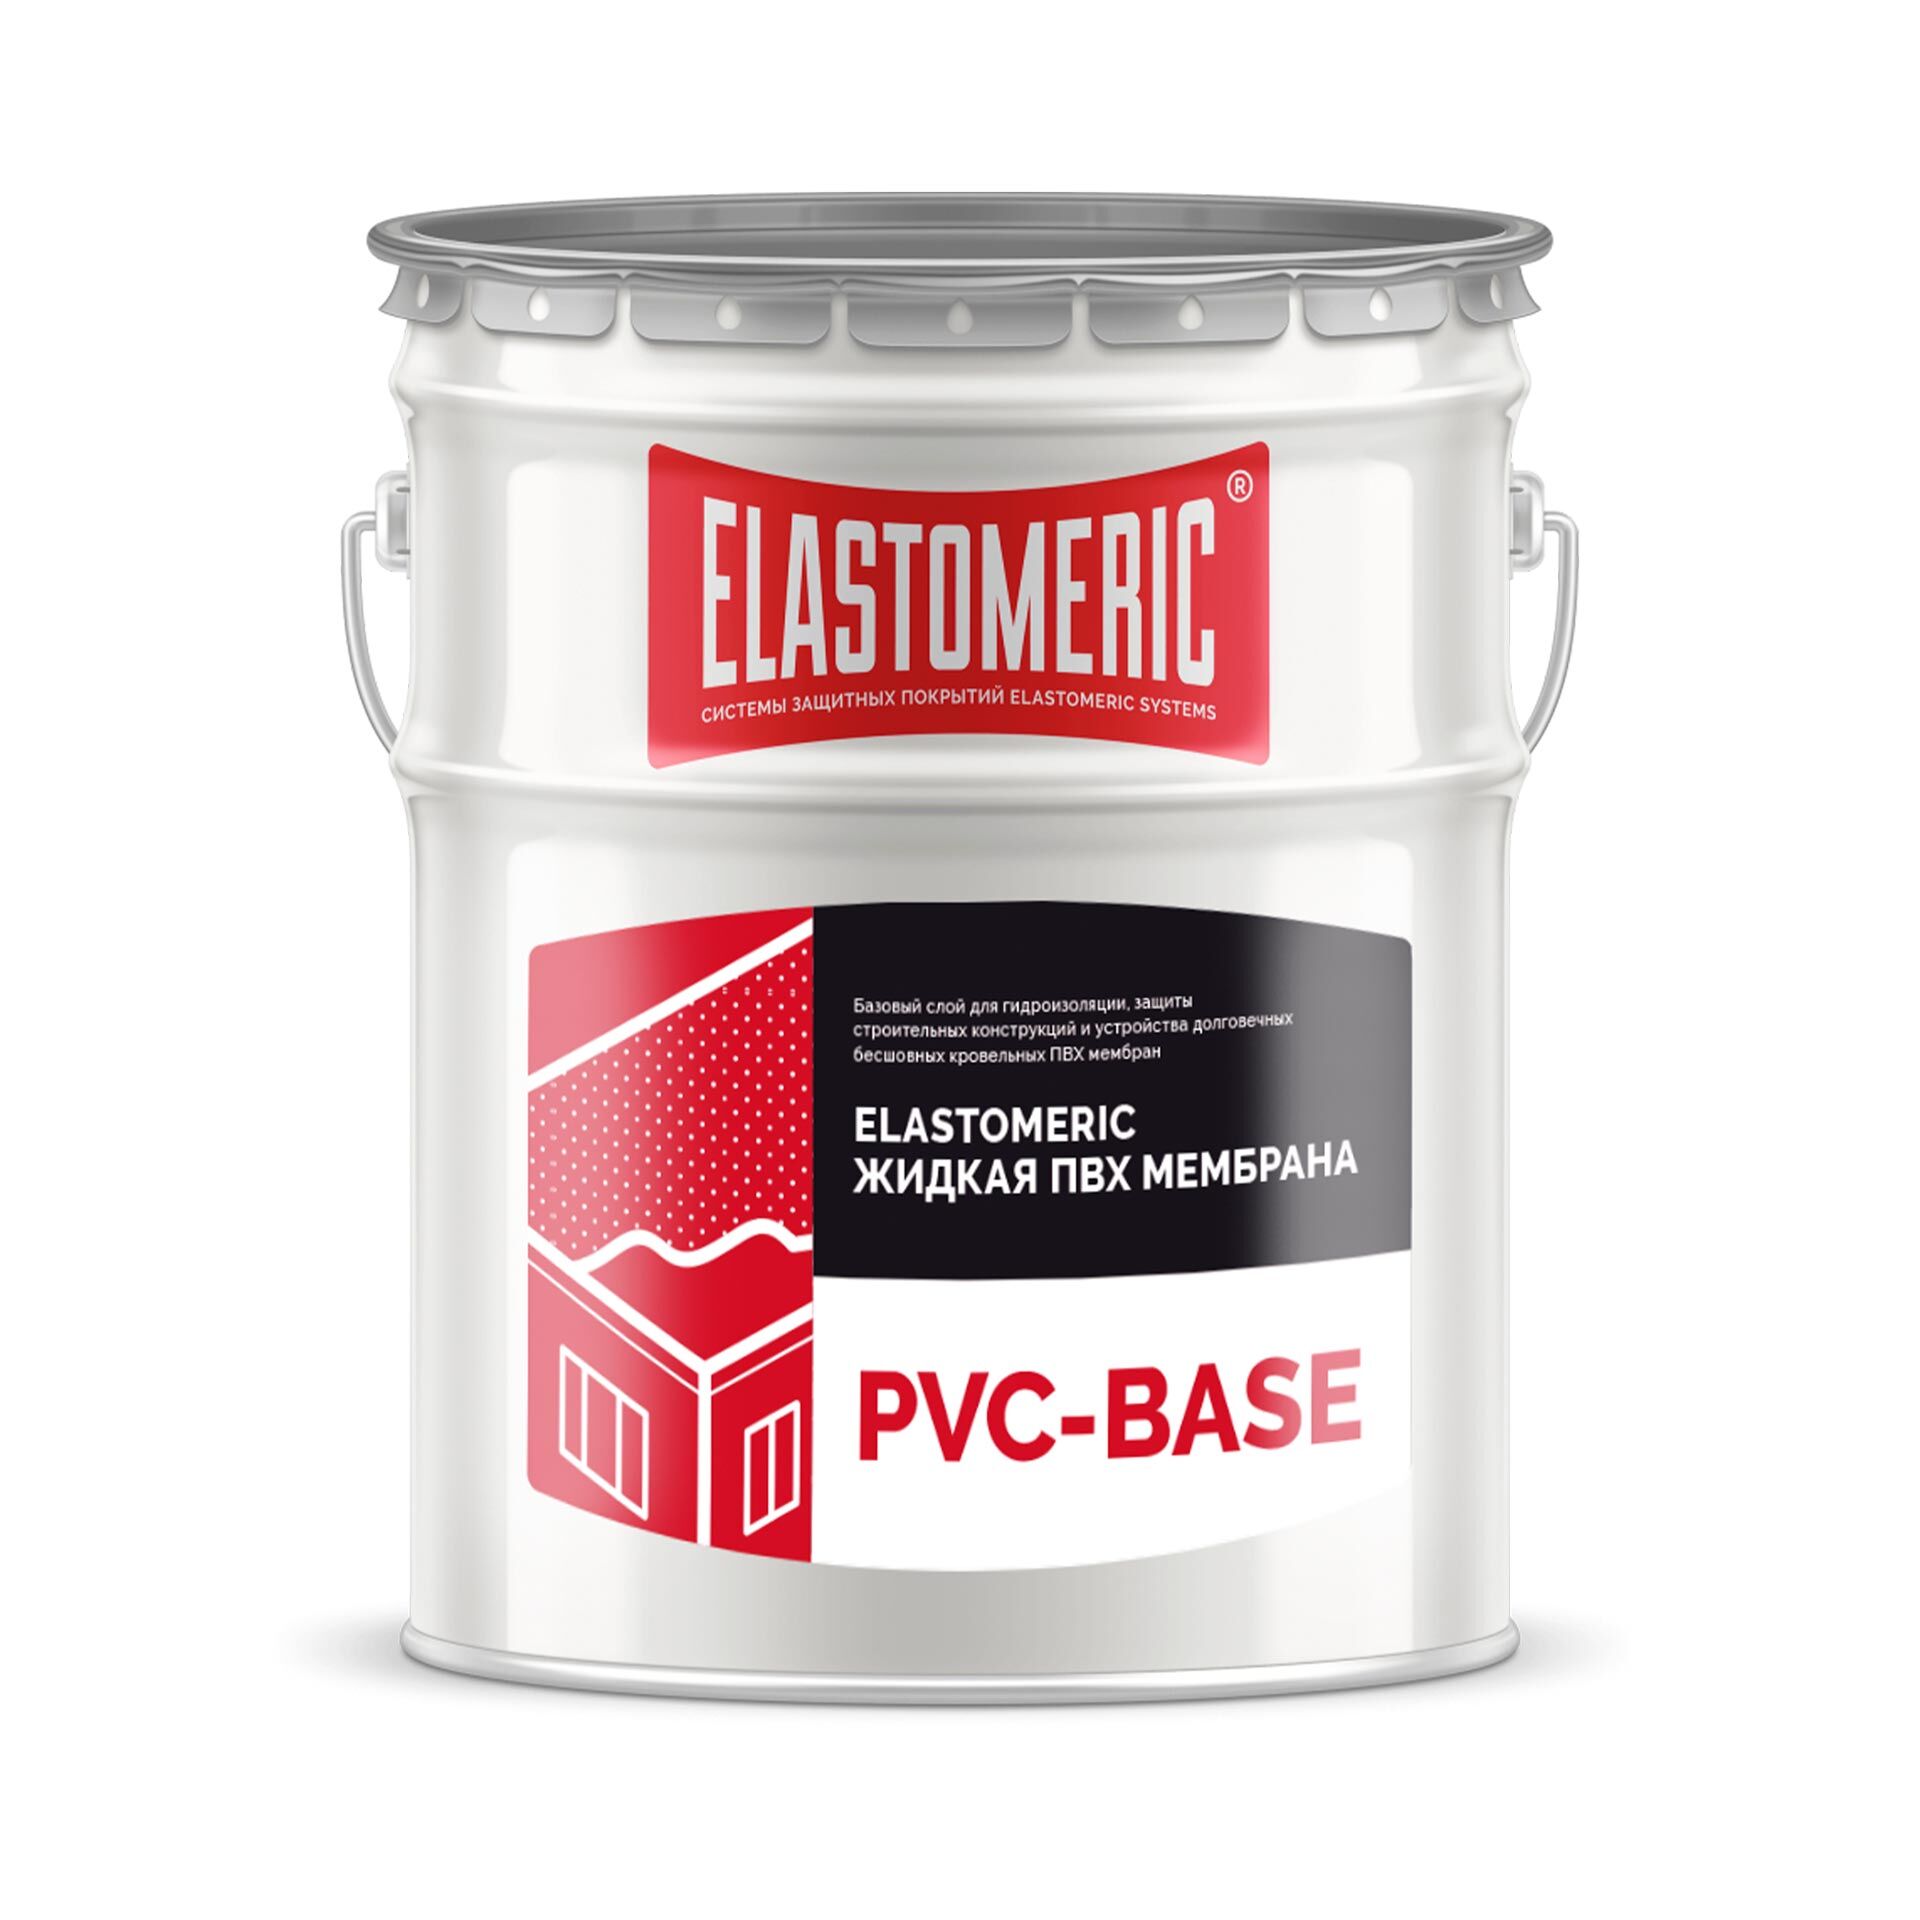 Жидкая ПВХ мембрана - ELASTOMERIC PVC BASE (базовый слой) 20 кг